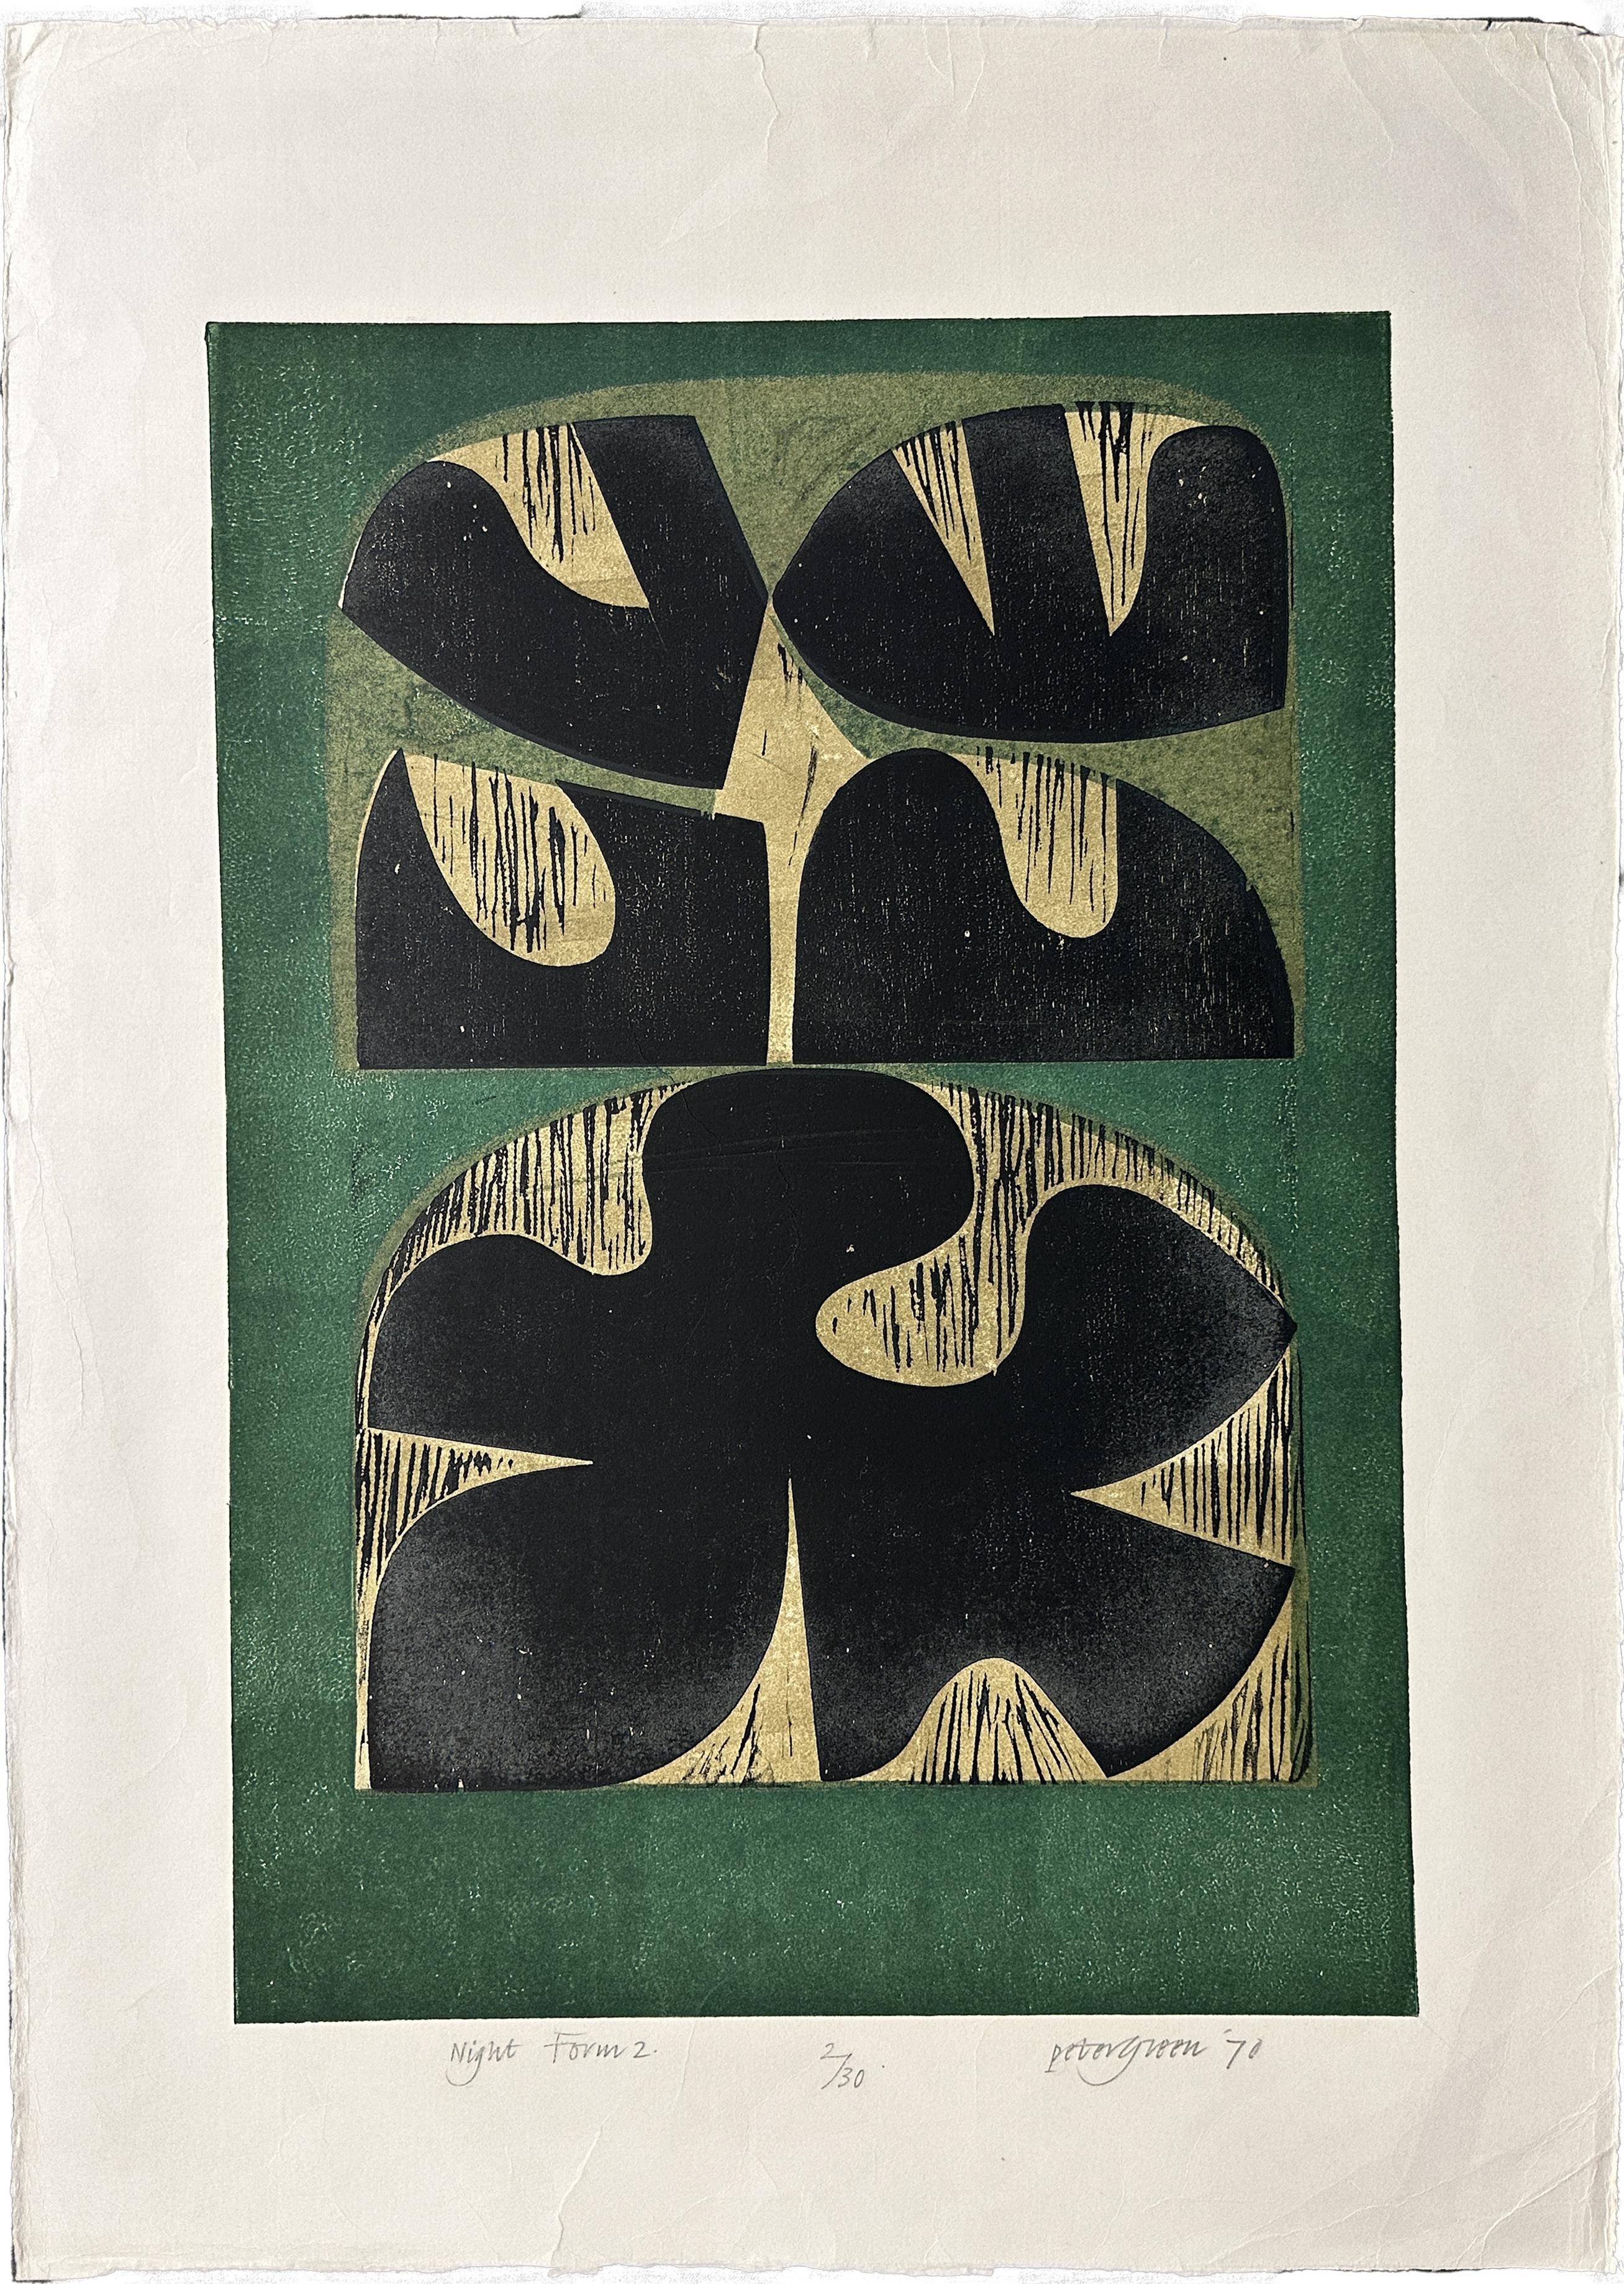 Interior Print Peter Green - Night Form 2, édition limitée signée, grande gravure sur bois, 1970